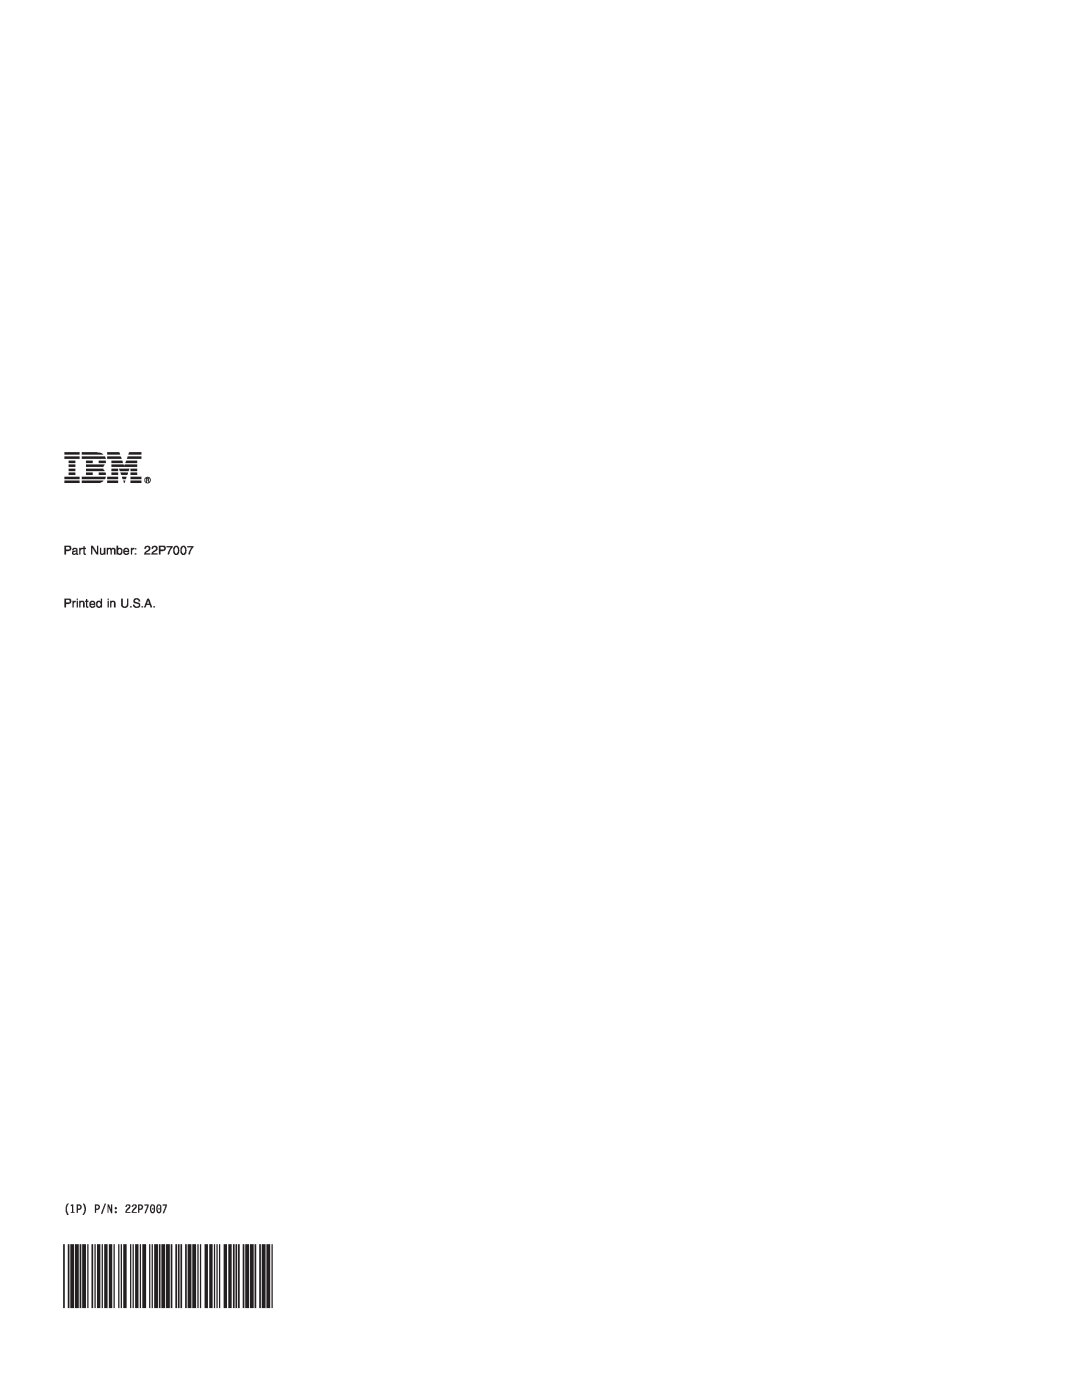 IBM manual 1P P/N 22P7007 